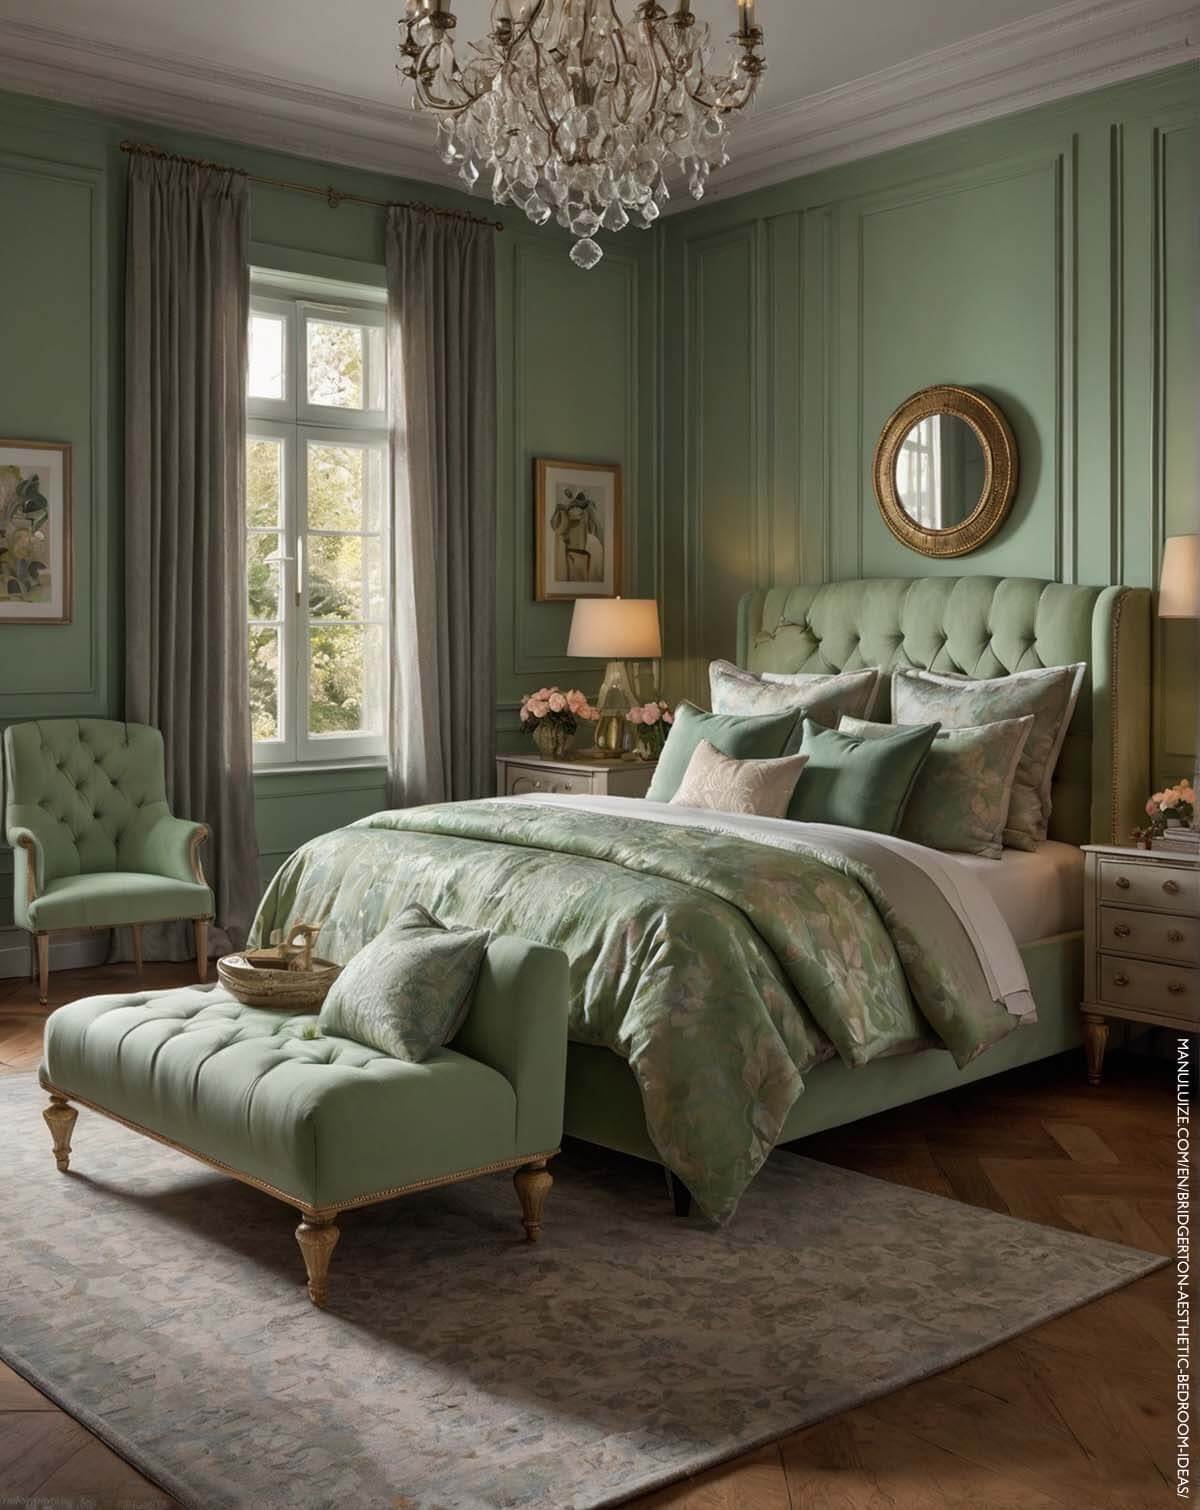 Pastel green Regencycore bedroom ideas